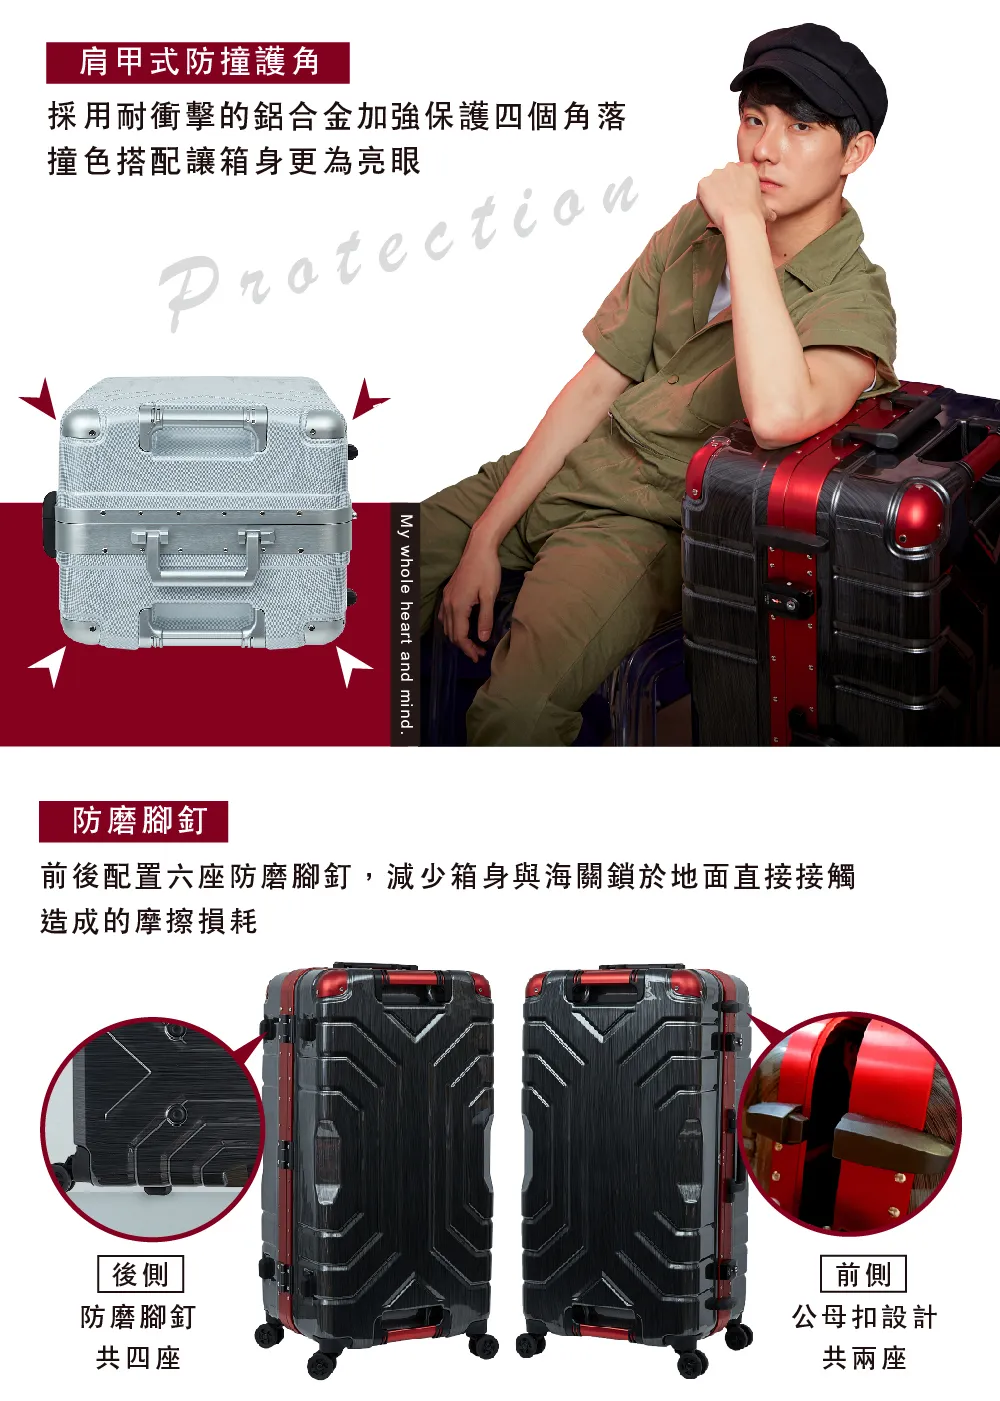 GripMaster-luggage-GM5225-74-27-P6.jpg